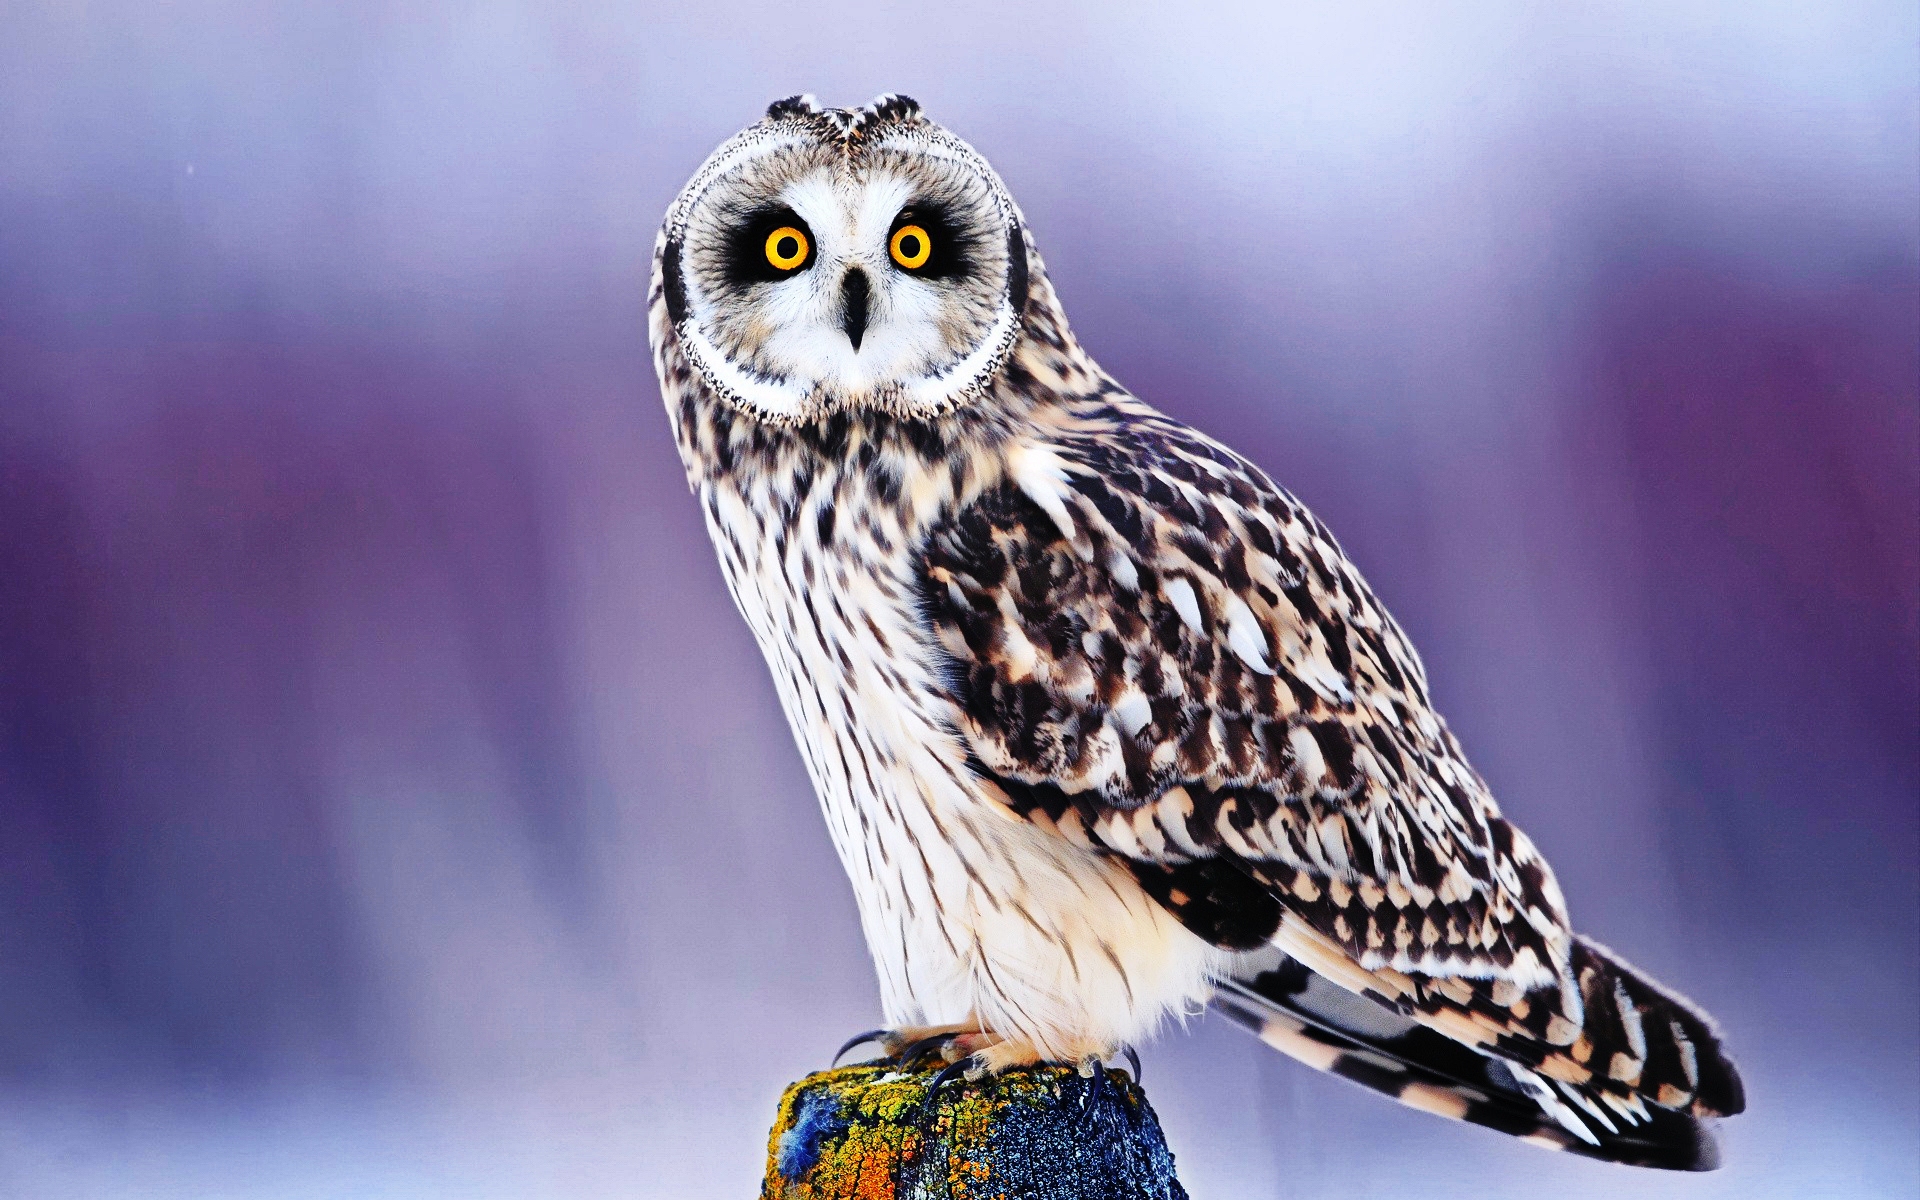 Cute Owl Wallpaper Px High